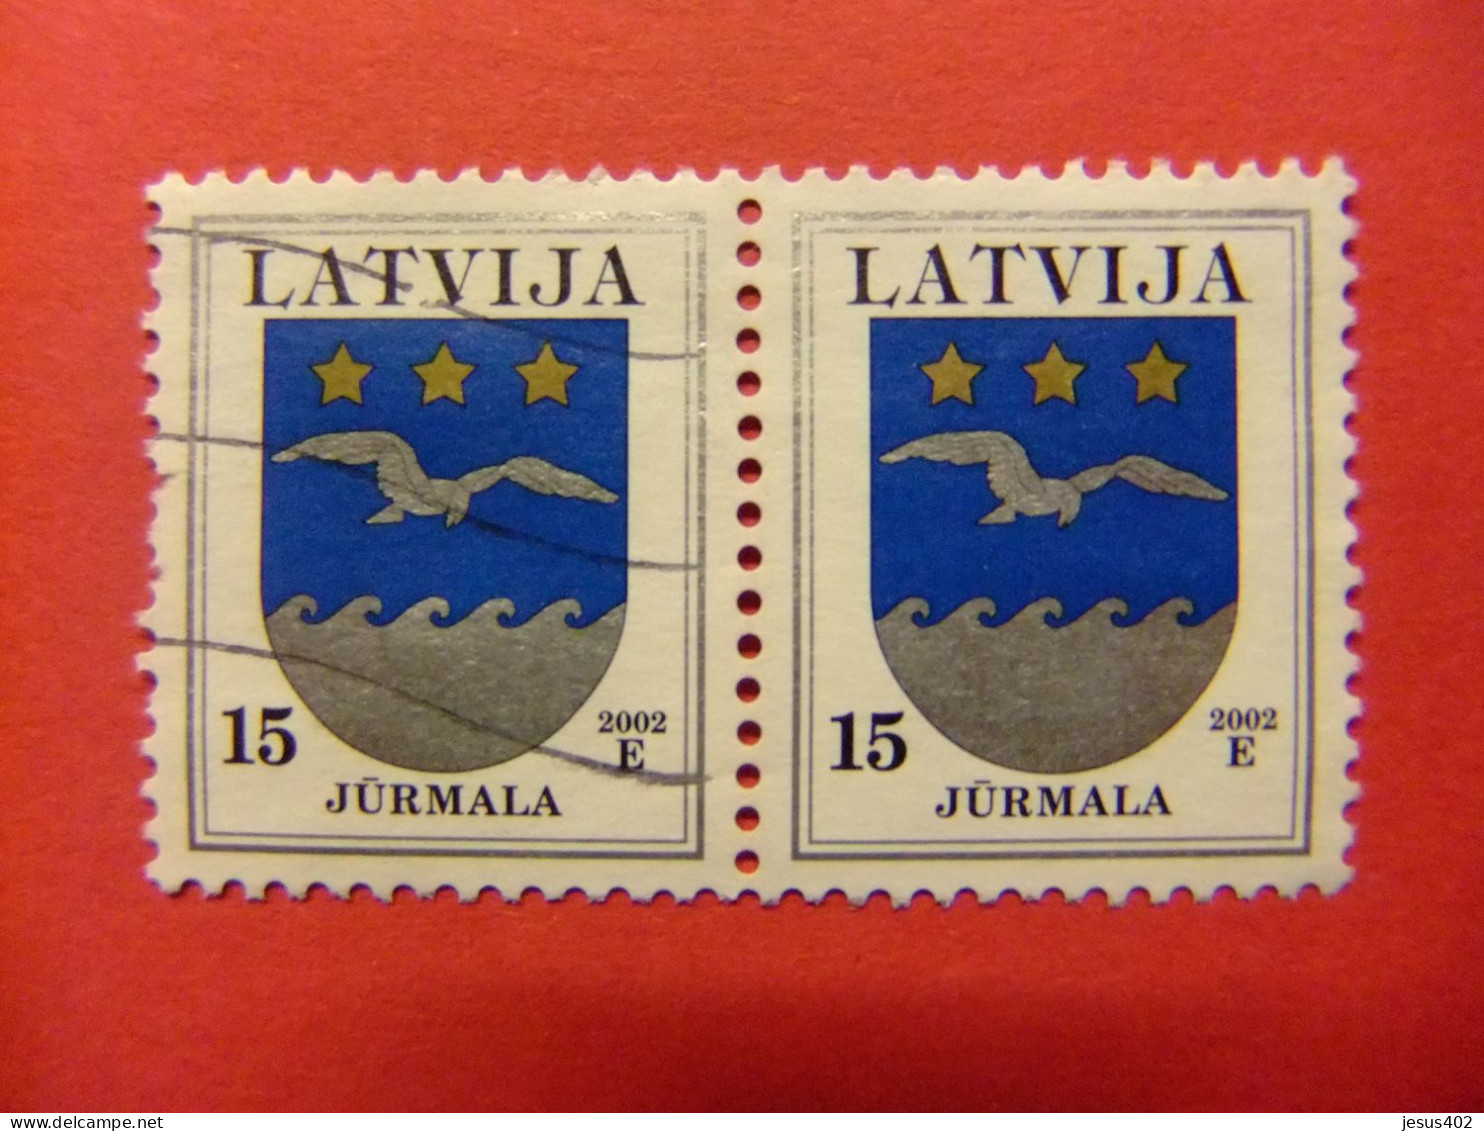 111 LETONIA - LATVIJA 2002 / ESCUDO JURMALA  / YVERT 528 FU - Lettonie